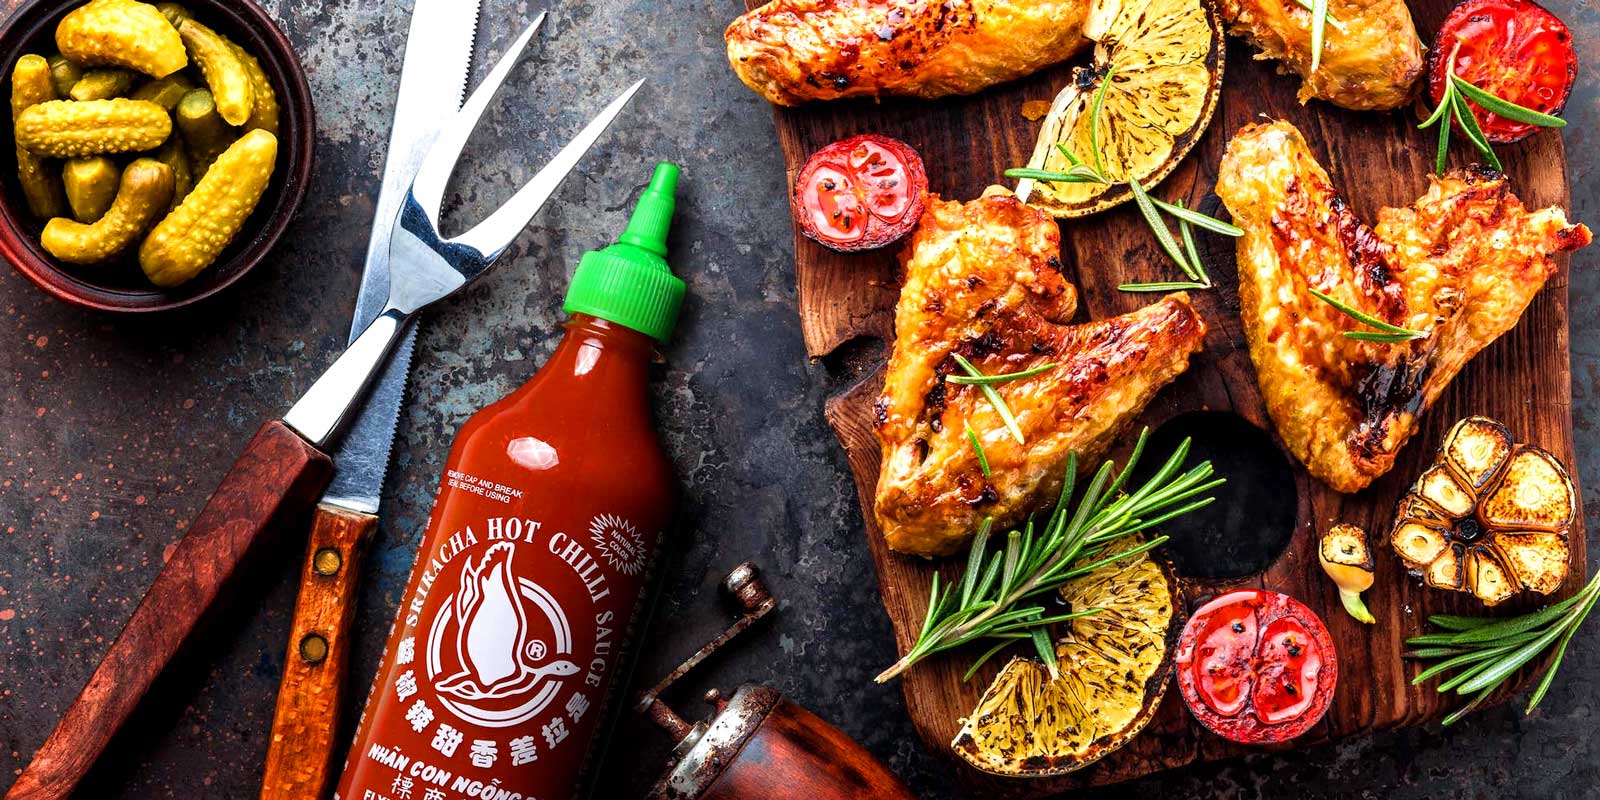 Sriracha saucer fra Flying Goose I 1999 blev vores foersteklasses thailandske saucemaerke, Flying Goose, lanceret med det formal at hoejne standarden for varme saucer og give foodies det maksimale niveau af smag til at komplementere alle slags velsmagende laekkerier.